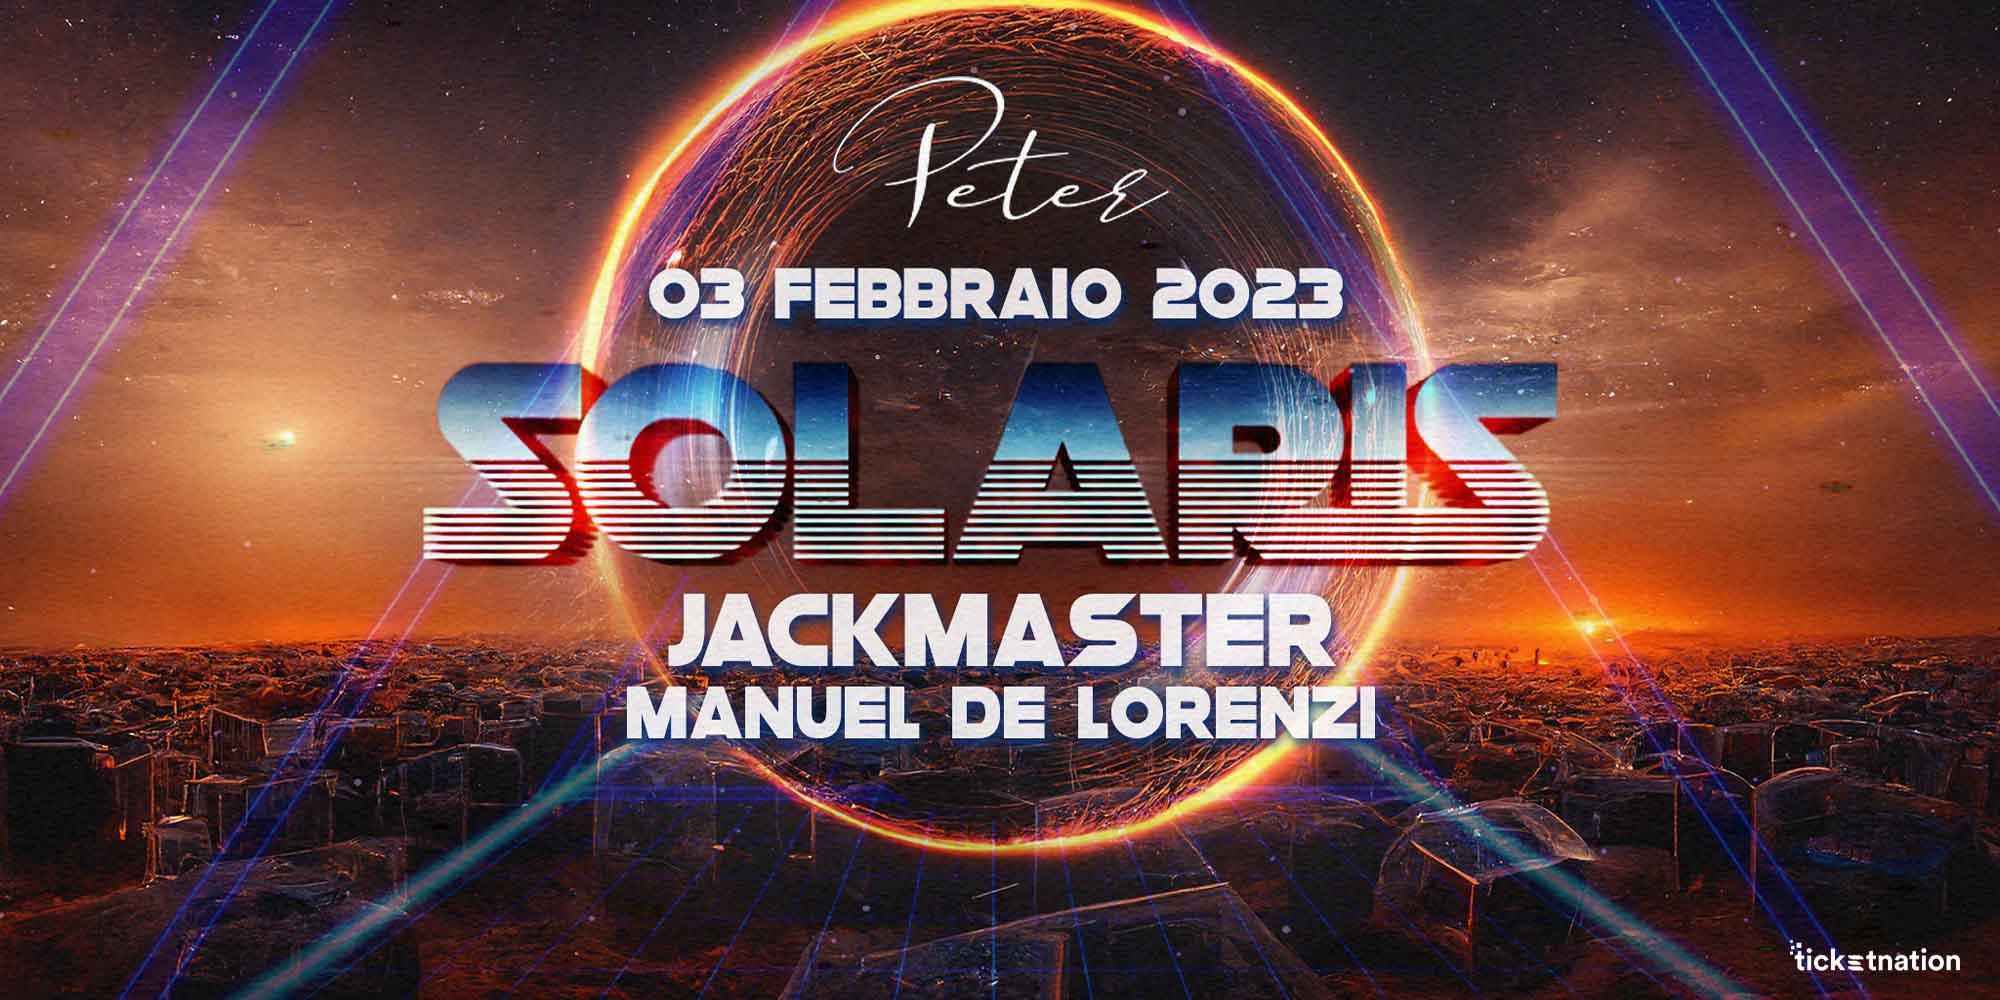 Solaris-peter-03-02-23